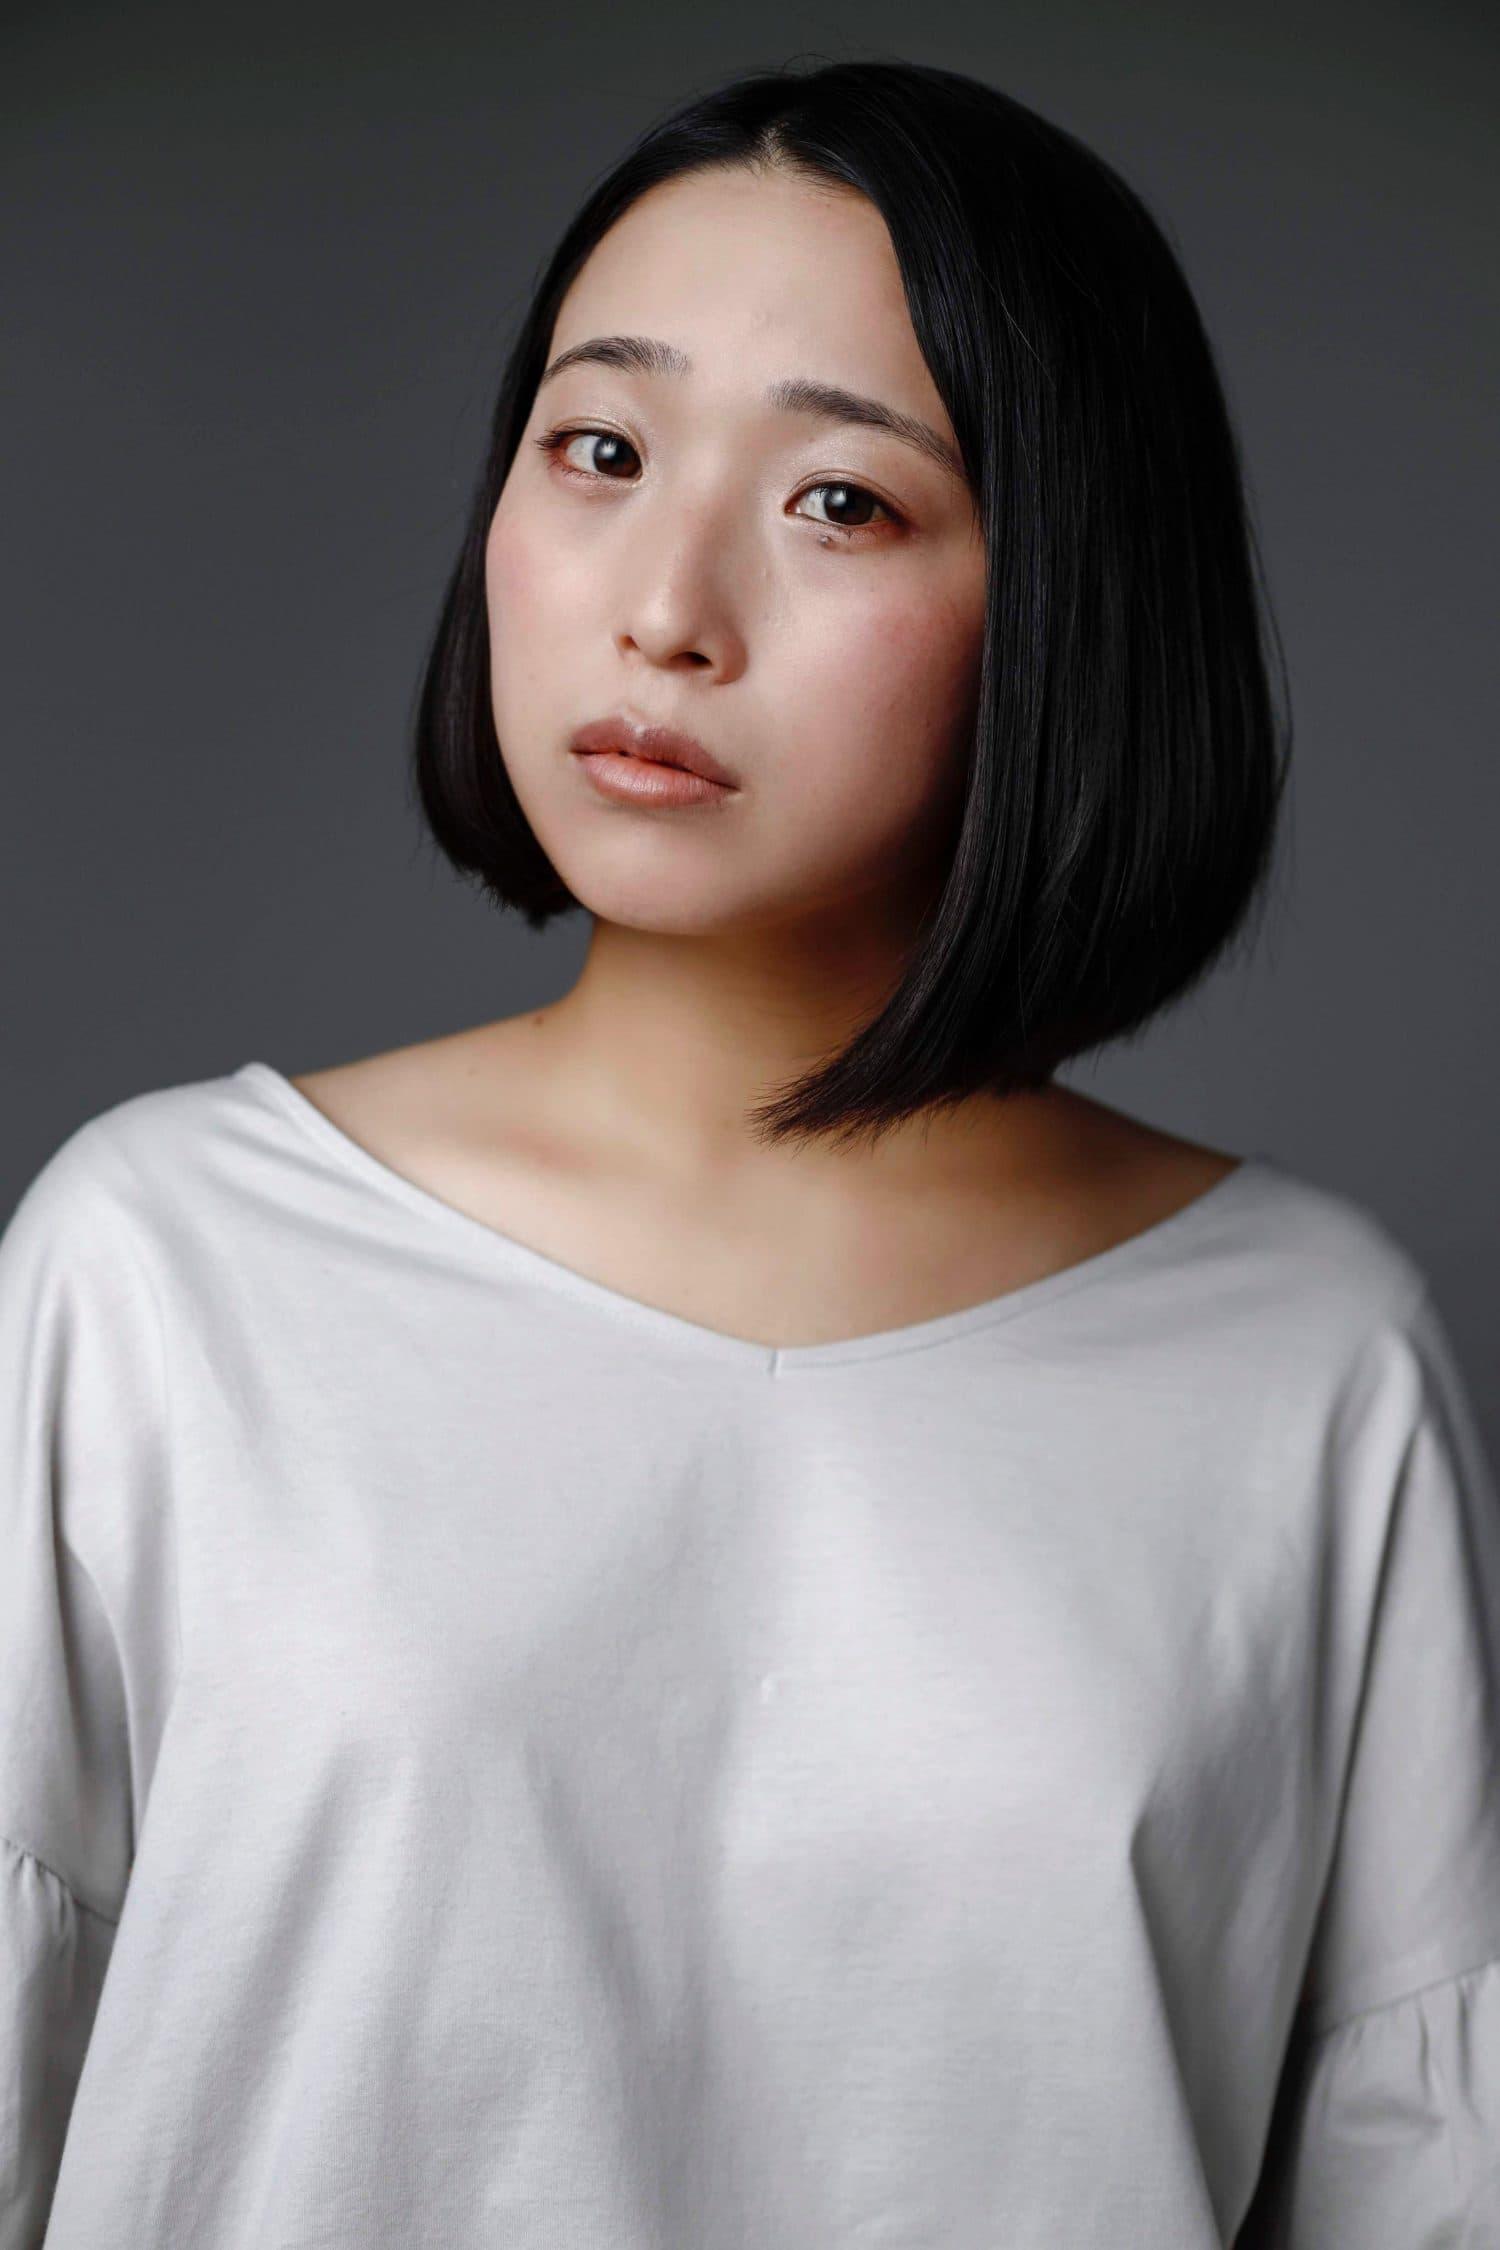 Yaeko Kiyose | Researcher